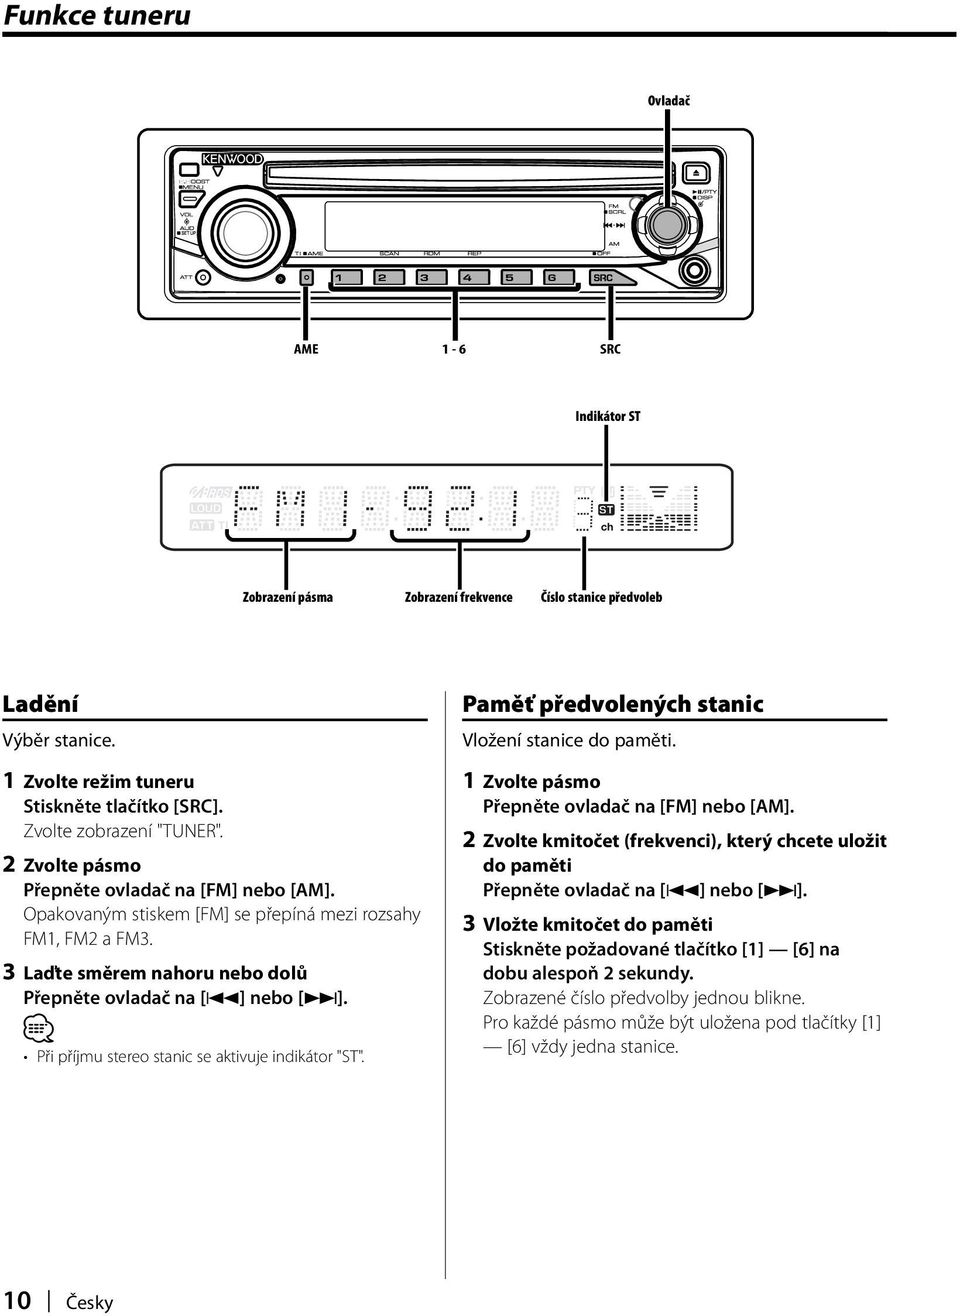 Při příjmu stereo stanic se aktivuje indikátor "ST". Paměť předvolených stanic Vložení stanice do paměti. 1 Zvolte pásmo Přepněte ovladač na [FM] nebo [AM].